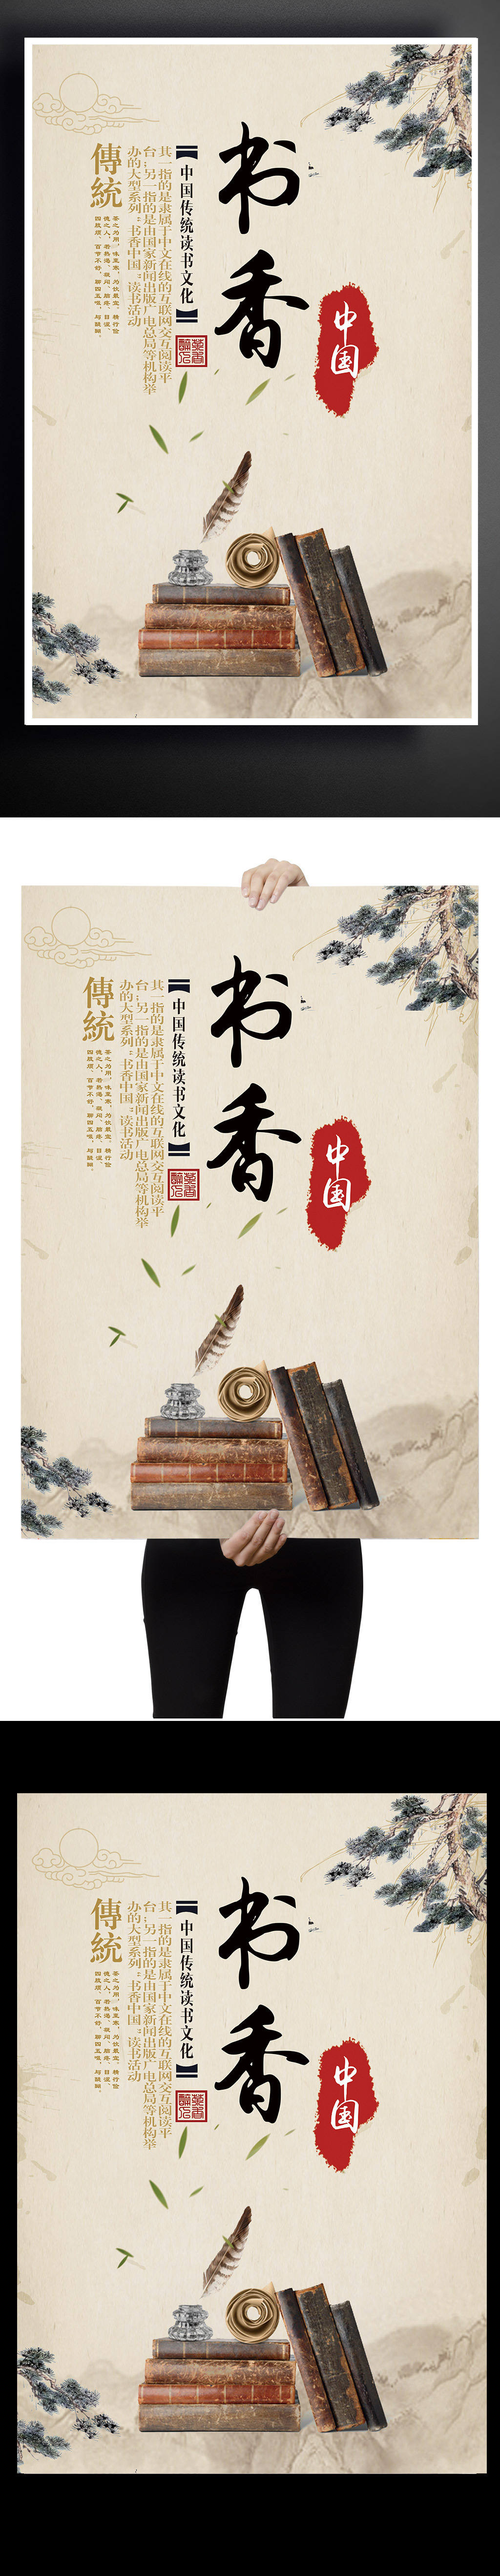 书香中国海报设计下载图片